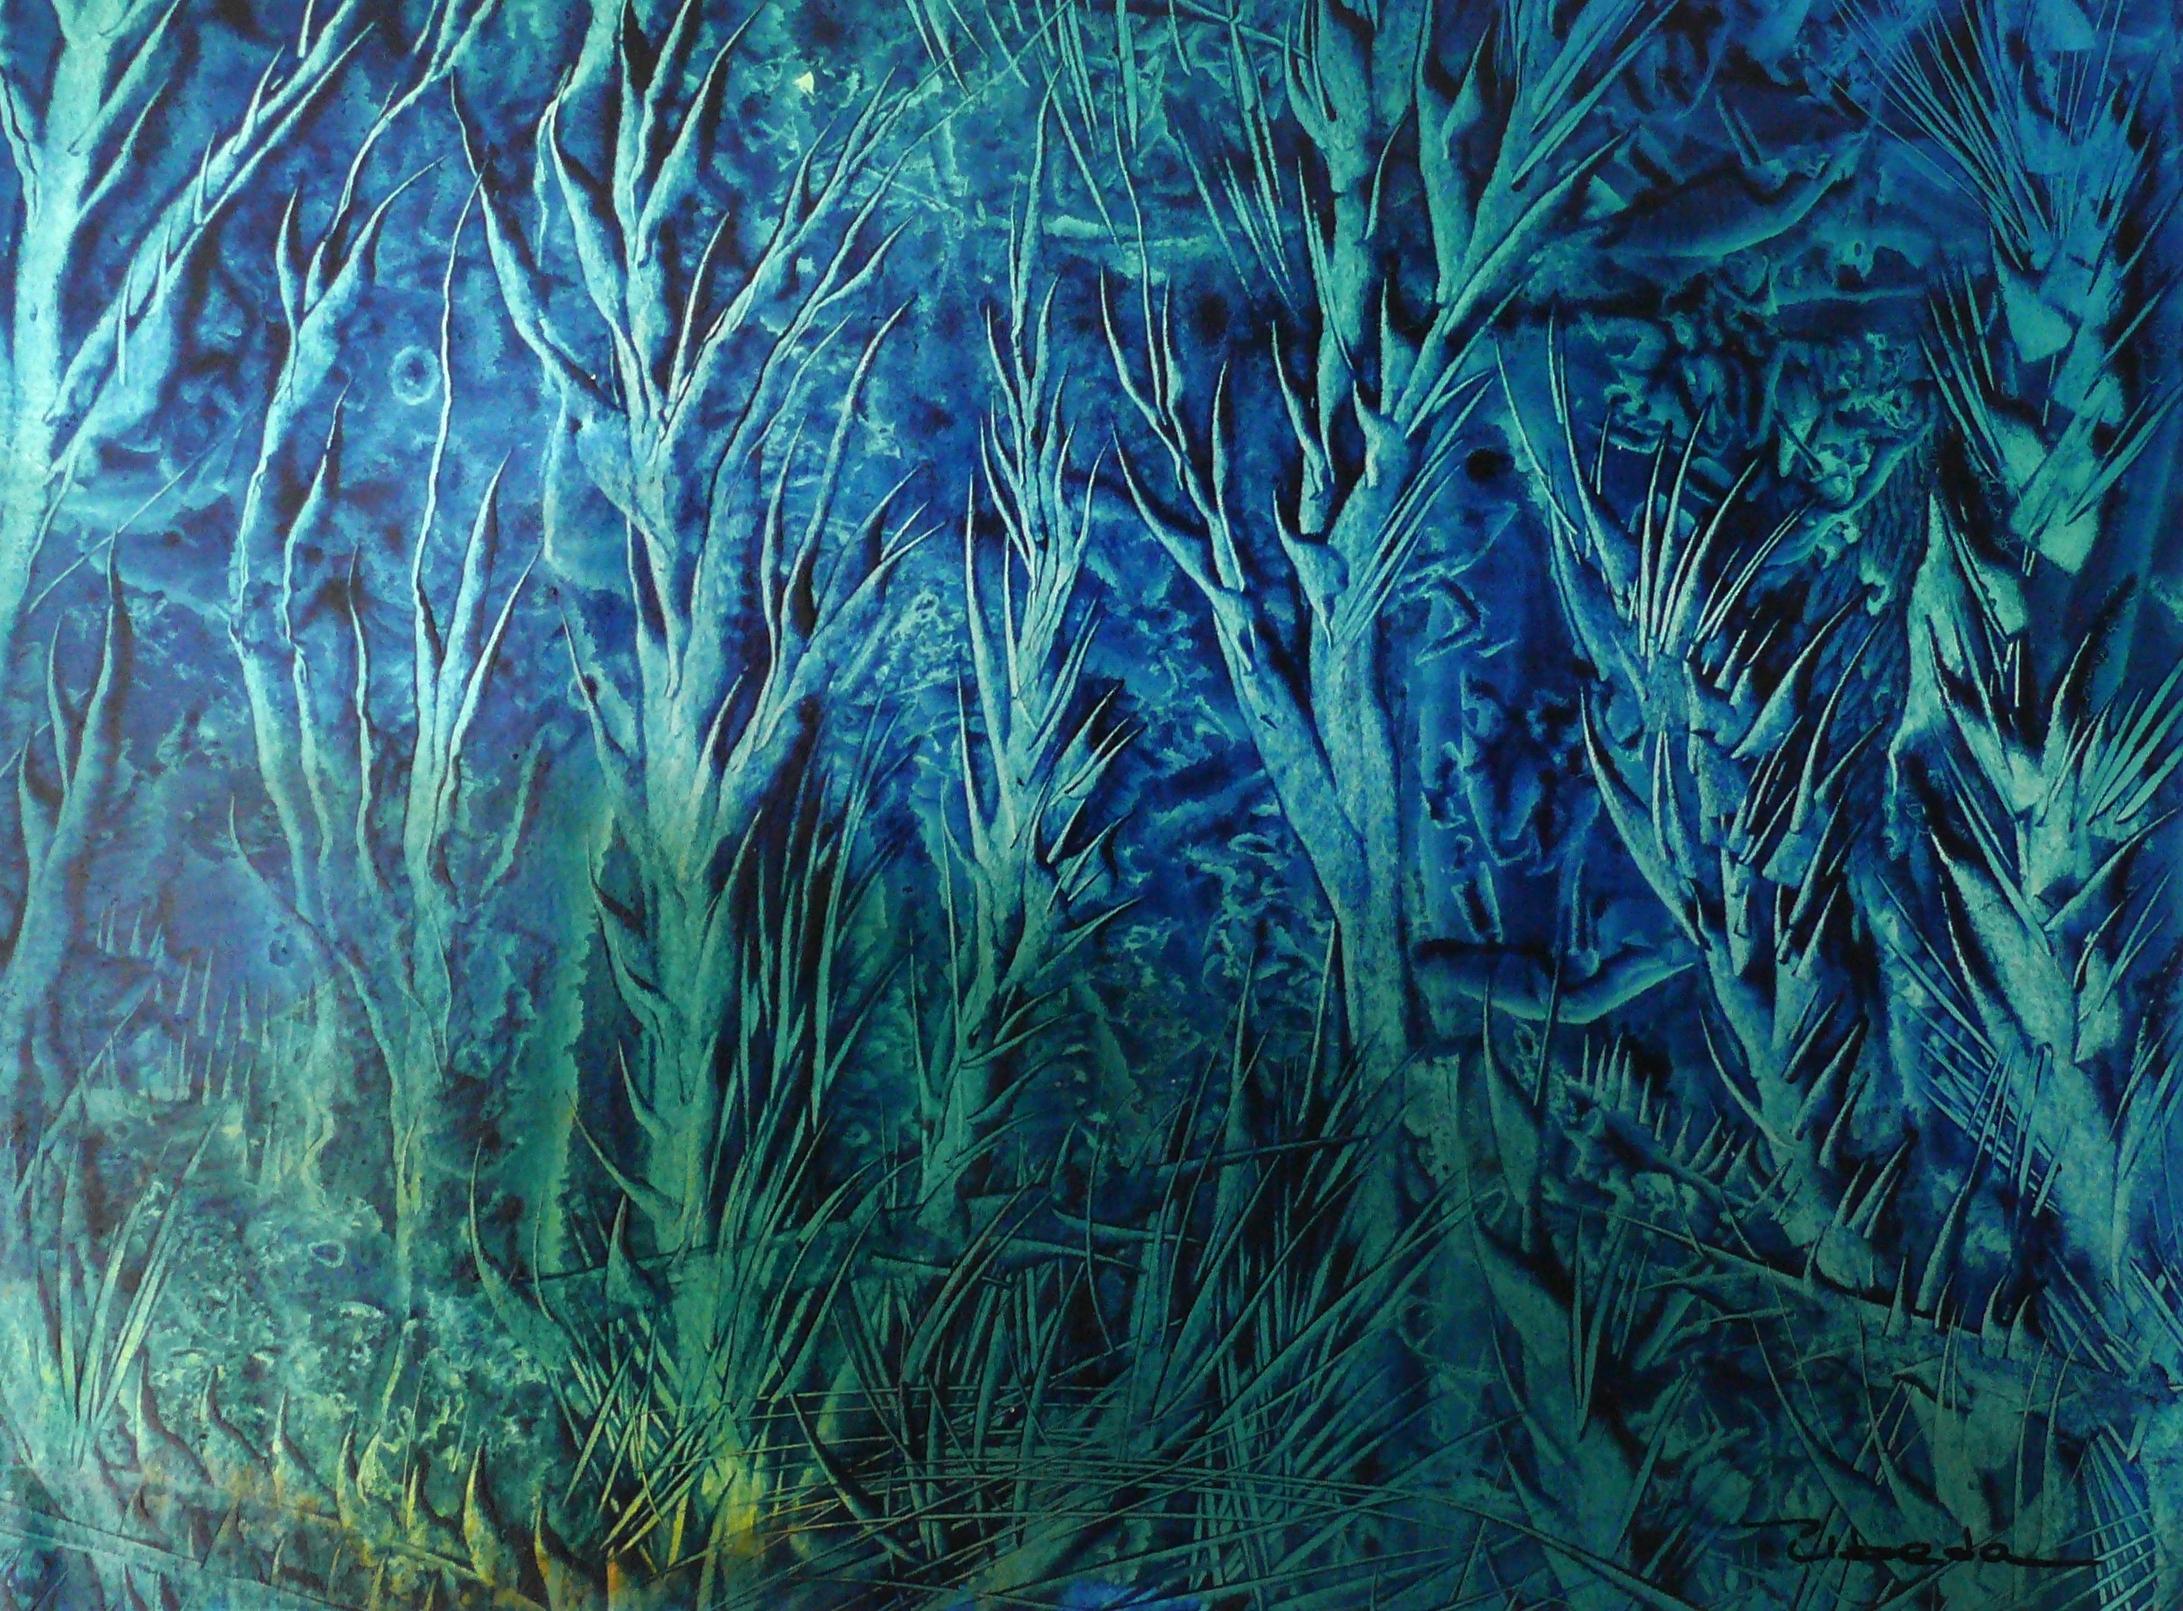 Ángel Luis Úbeda Figurative Painting – Serie Unter dem Meer, Nr. 10. Úbeda. Öl- Fantasie- unterwasserlandschaft in Blau und Grün.